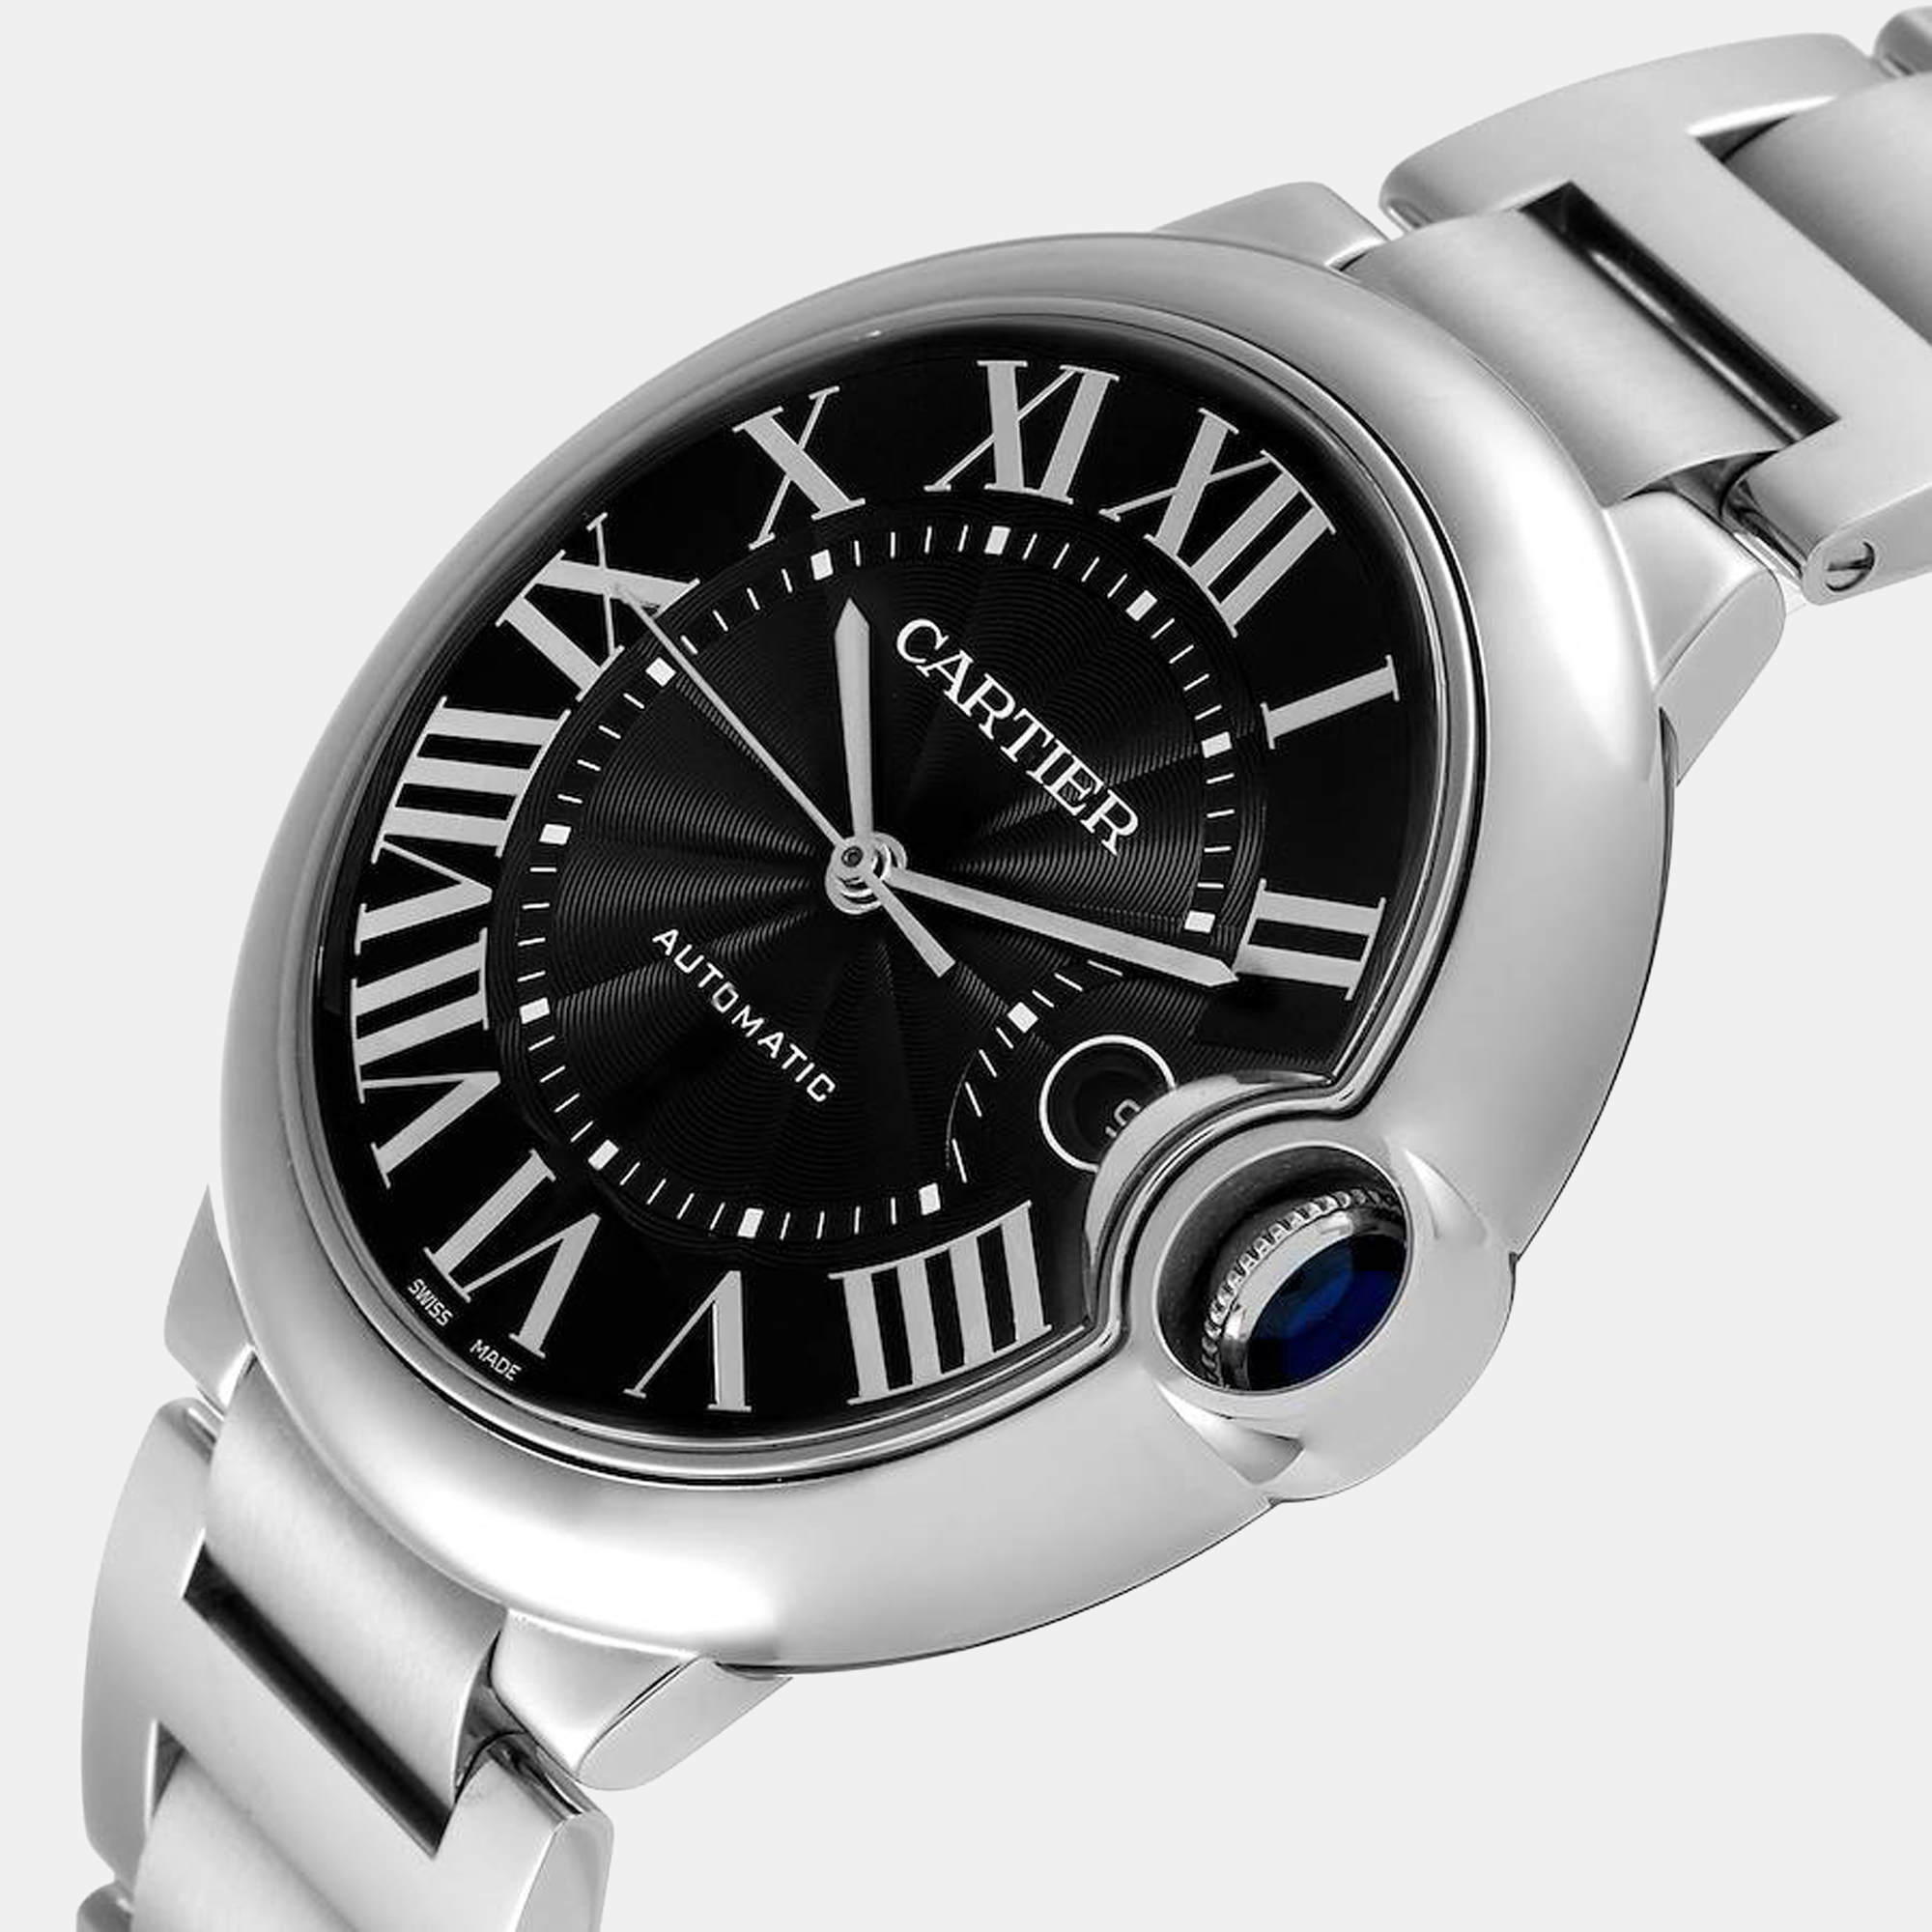 

Cartier Black Stainless Steel Ballon Bleu W6920042 Automatic Men's Wristwatch 42 mm